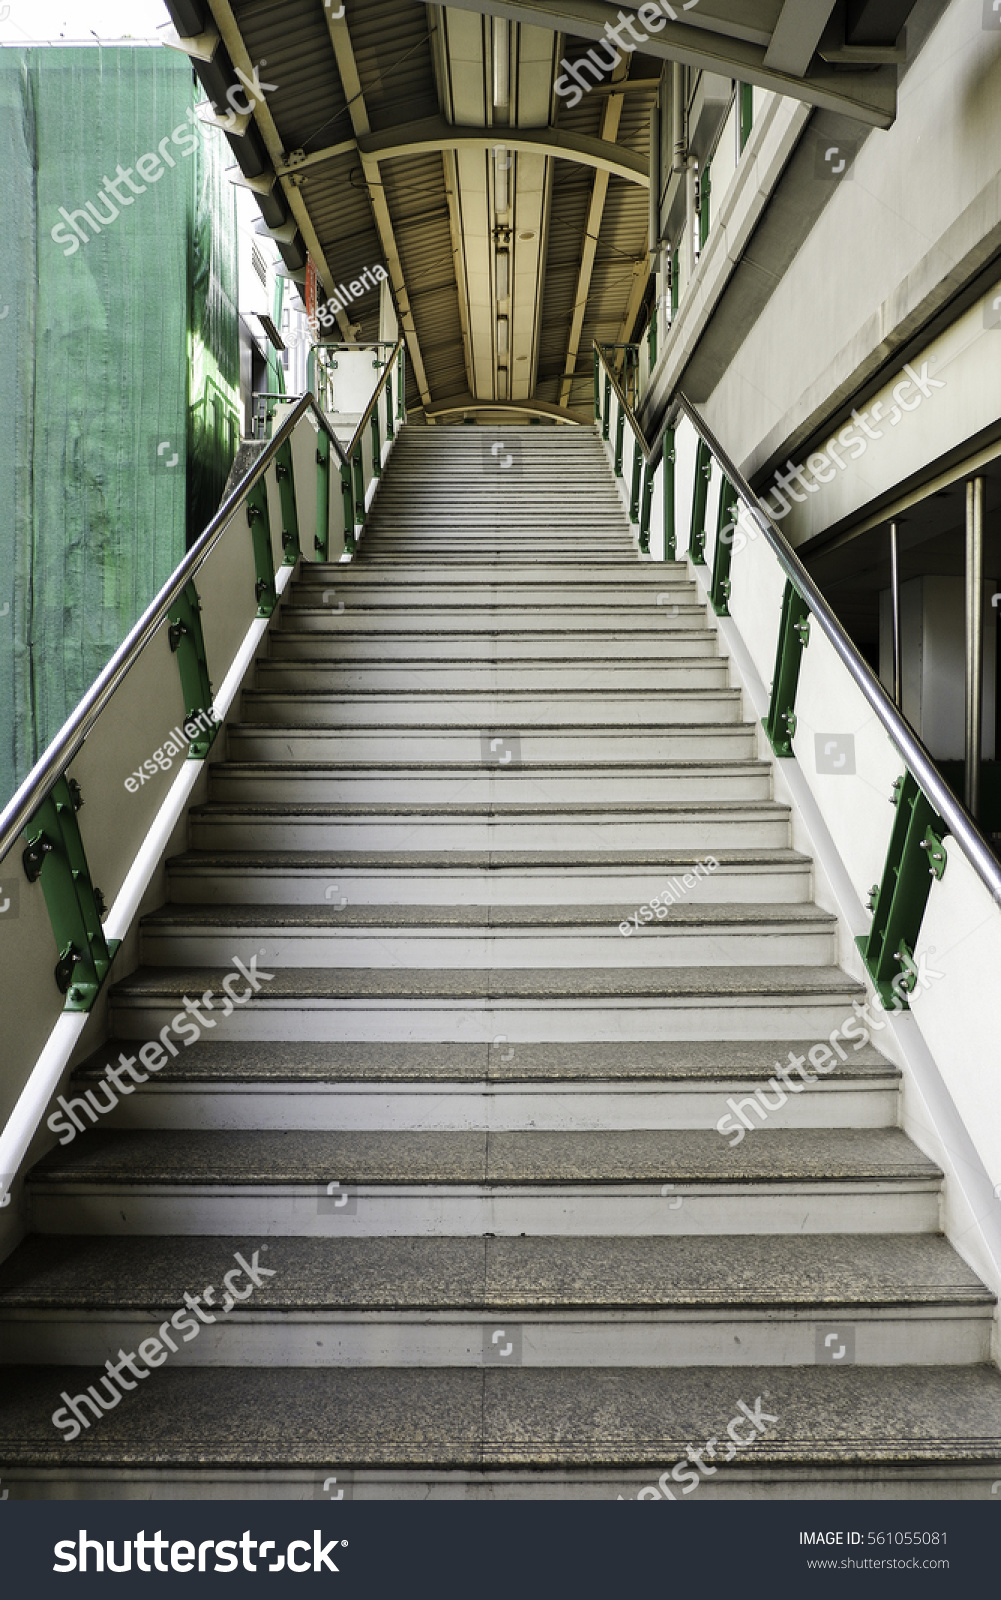 Long stairs at a bridge #561055081